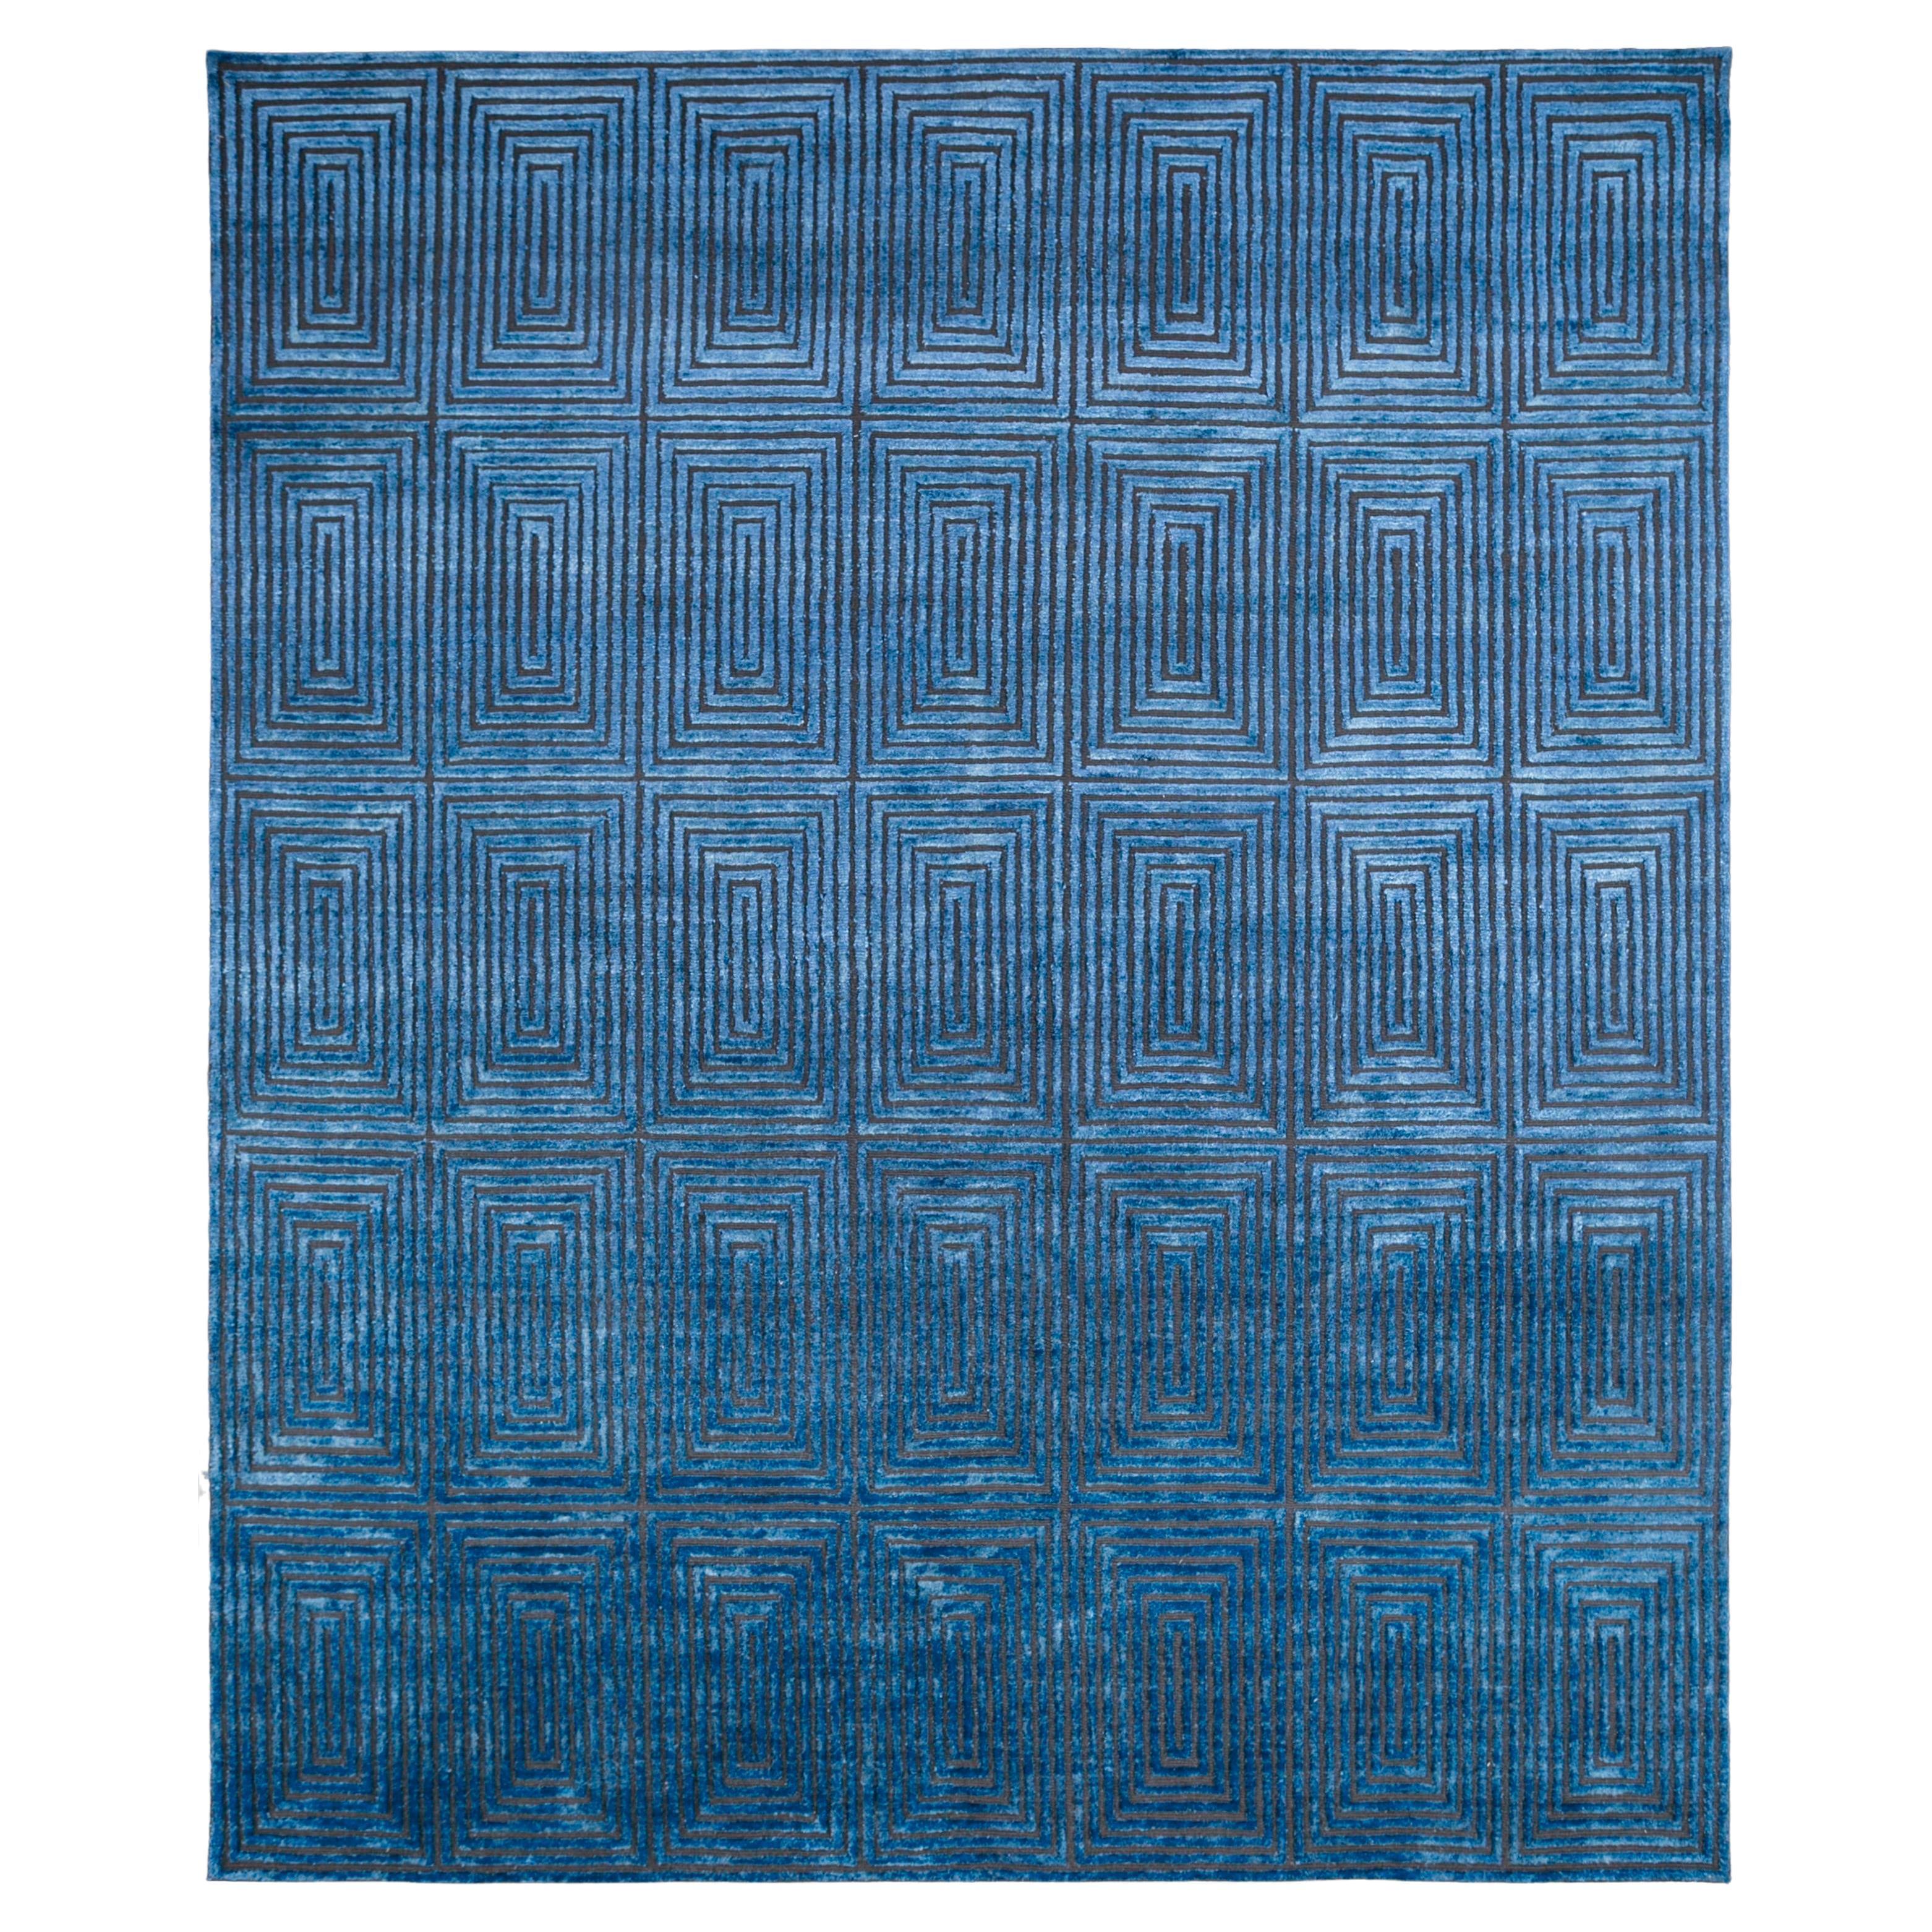  Kobaltfarbener Teppich von Rural Weavers, geknüpft, Wolle, Seide, 240x300cm